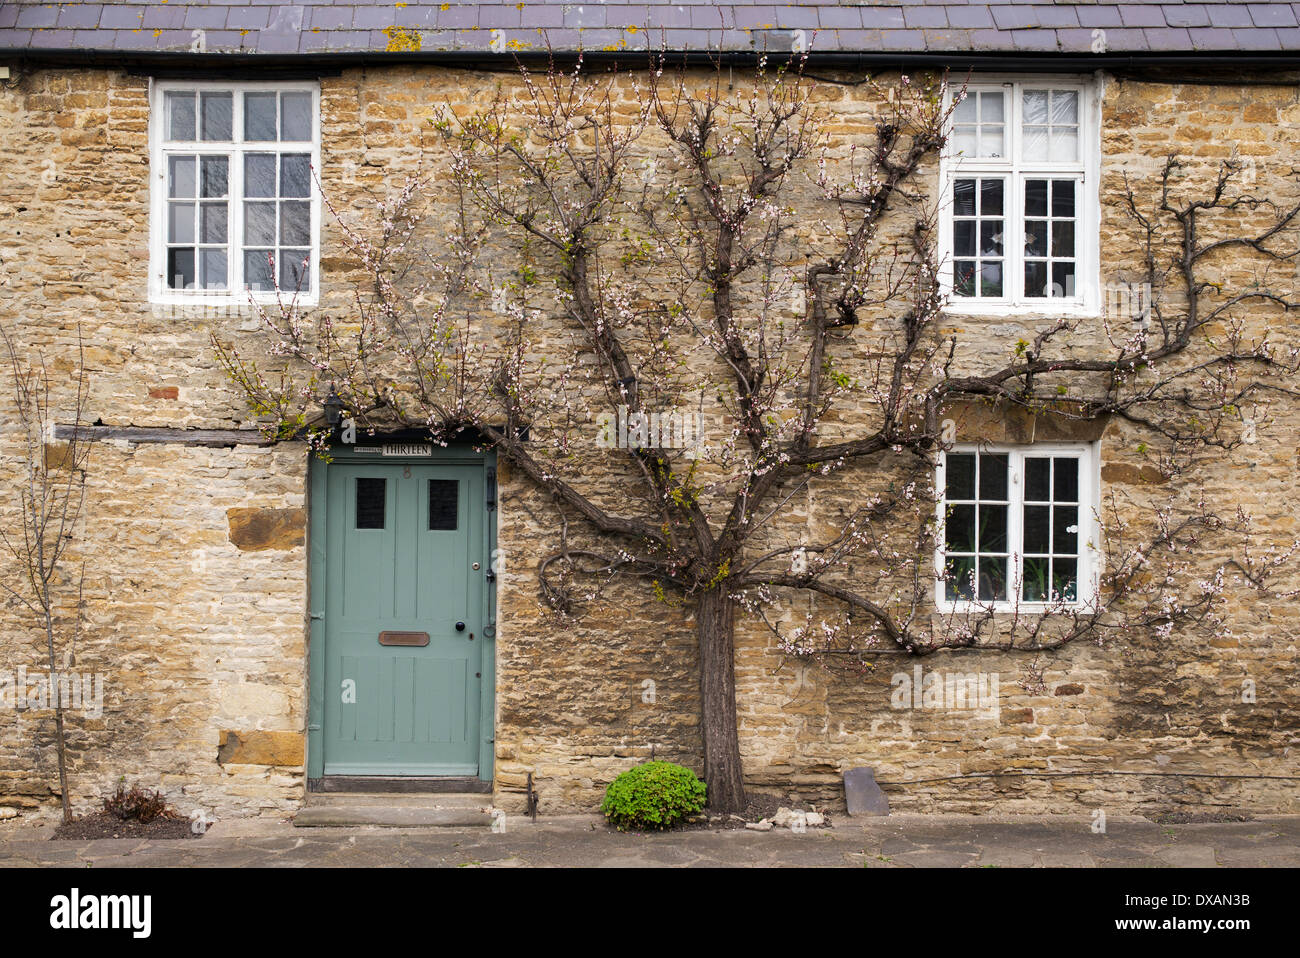 Prunus Armeniaca. Ventilator ausgebildet Aprikose Baum gegen eine Wand Steinhaus. Aynho, Northamptonshire, England Stockfoto